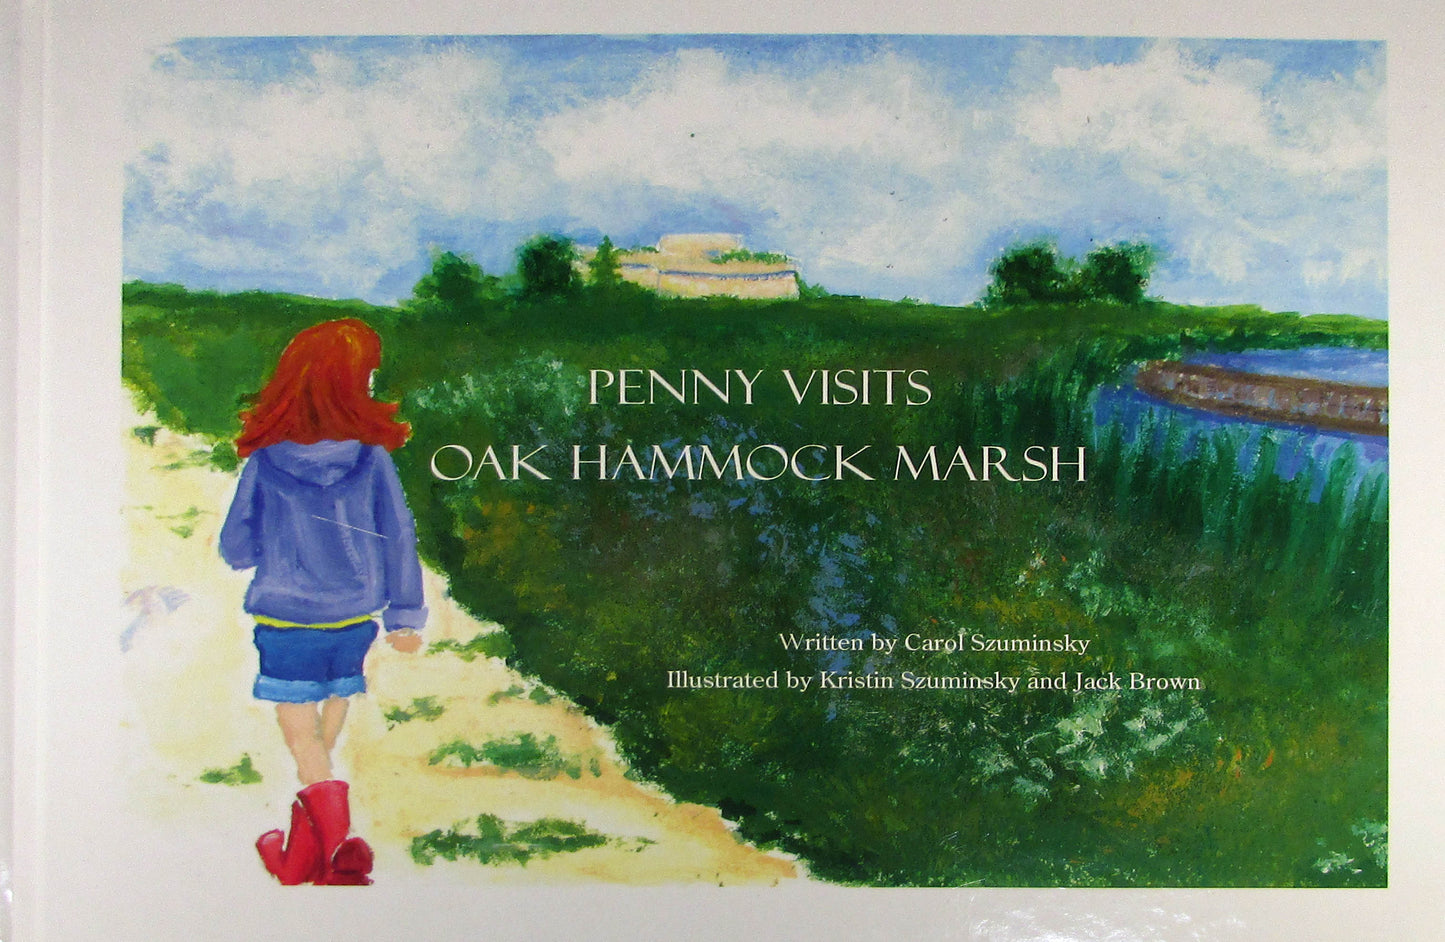 Penny visite le marais Oak Hammock | "Penny visite le marais d'Oak Hammock"